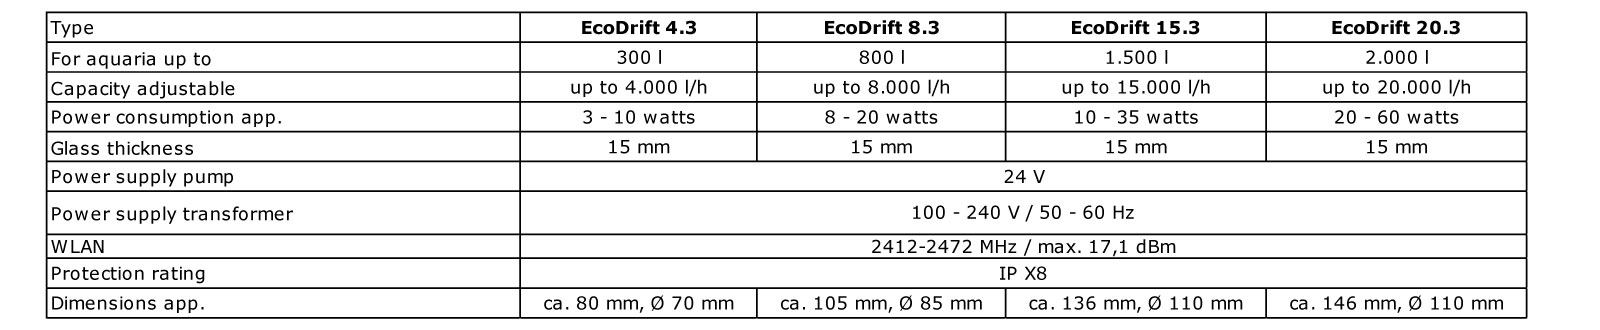 Aqua Medic Controller EcoDrift 15.3 27